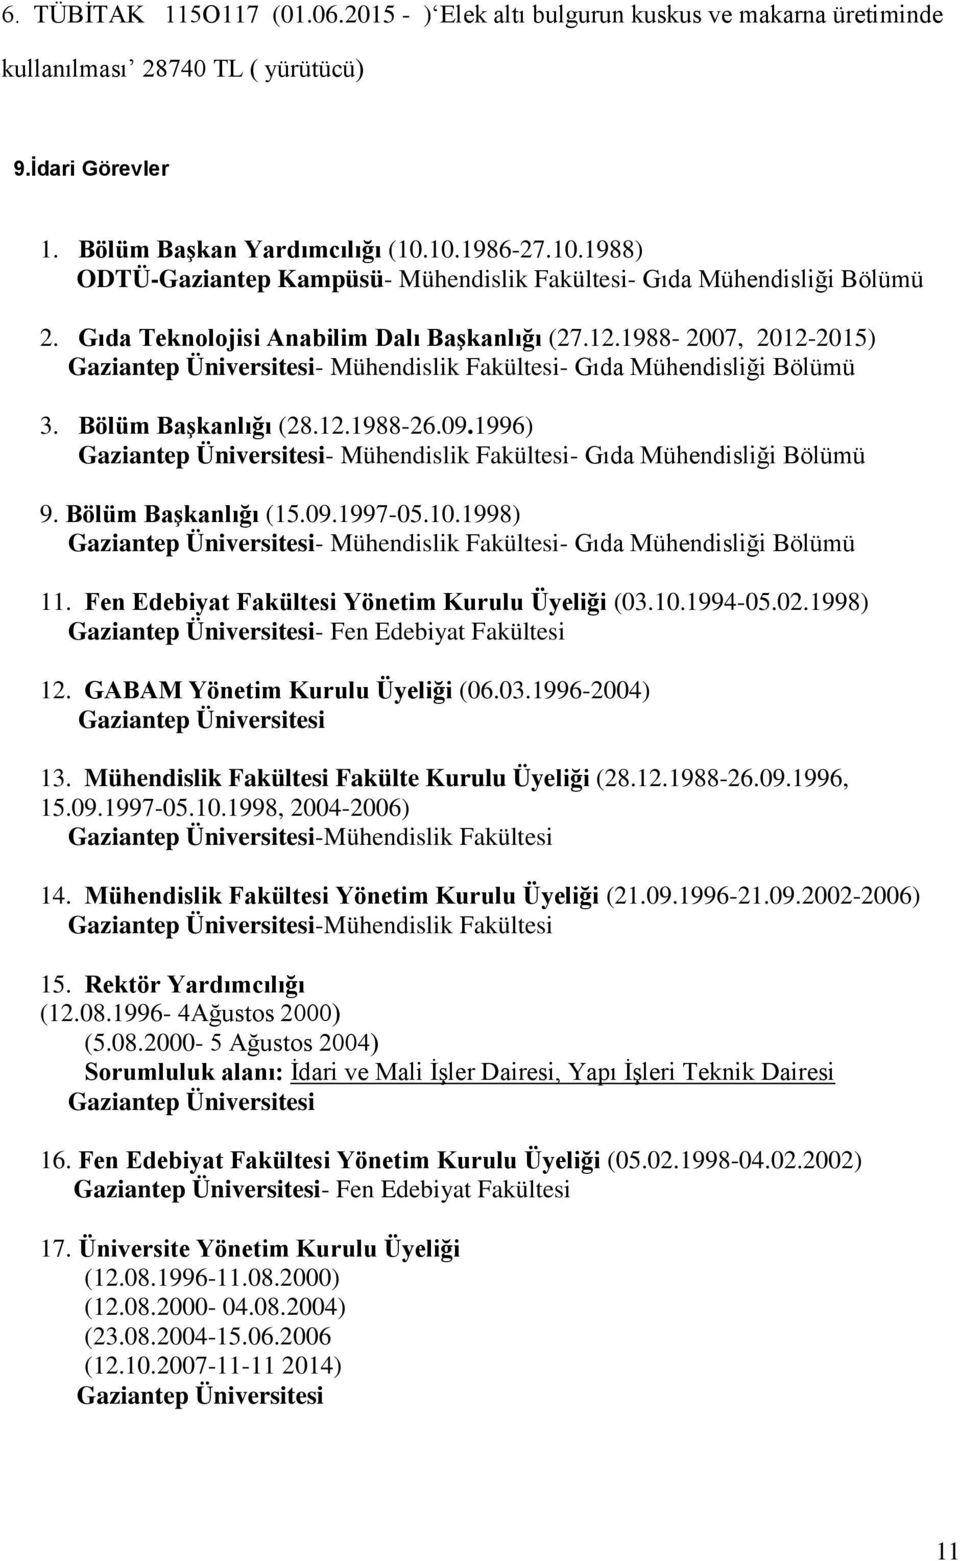 1988-2007, 2012-2015) Gaziantep Üniversitesi- Mühendislik Fakültesi- Gıda Mühendisliği Bölümü 3. Bölüm Başkanlığı (28.12.1988-26.09.